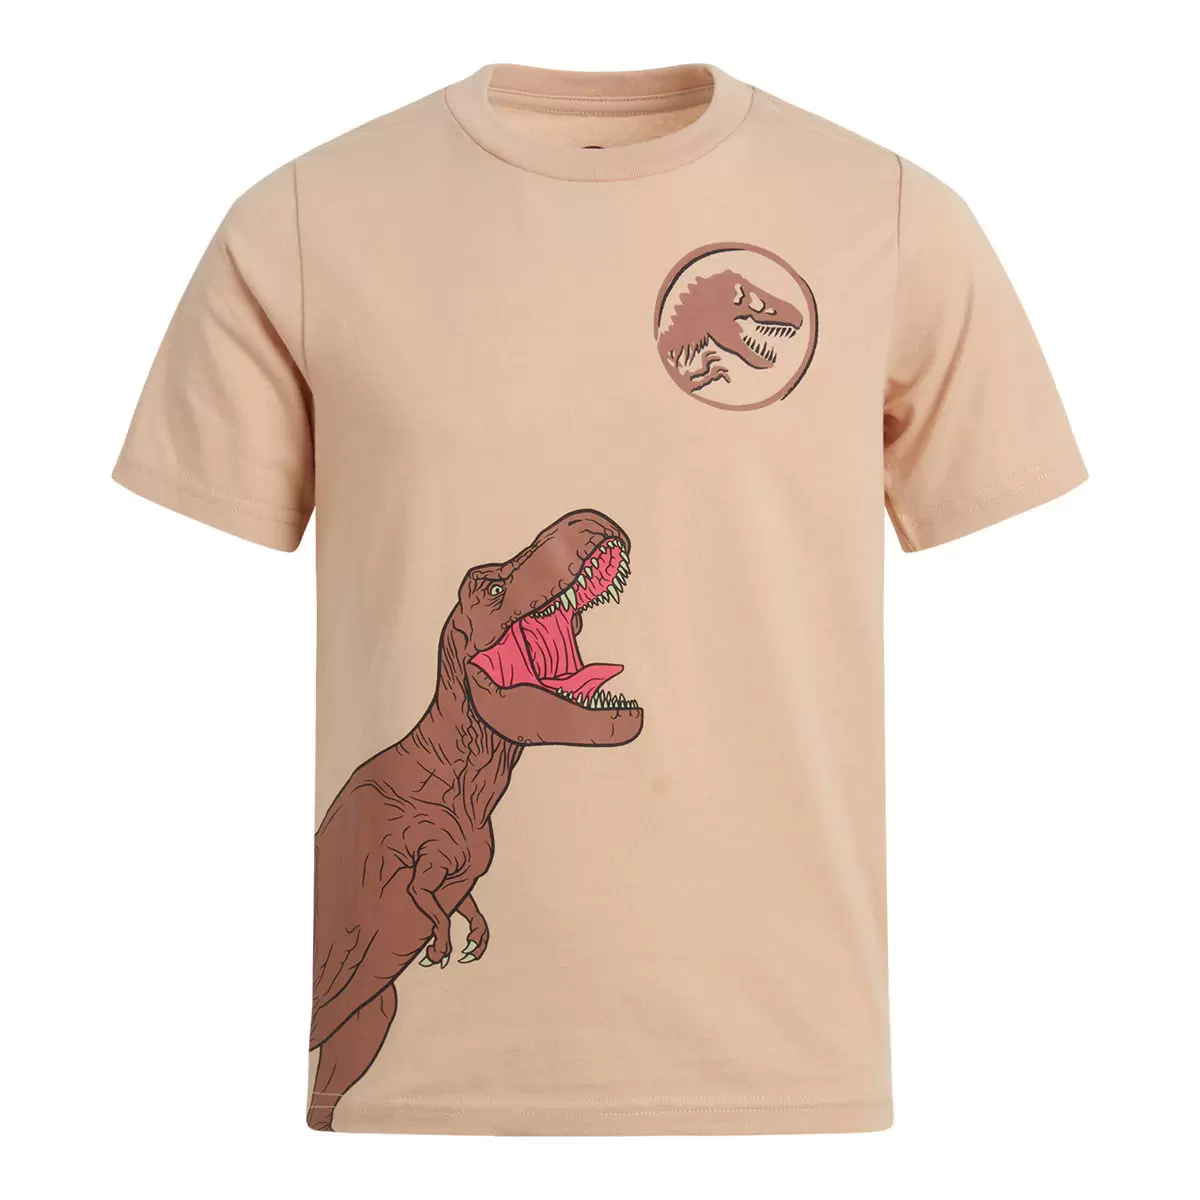 兒童卡通圖案短袖上衣四件組 Jurassic Park 3T